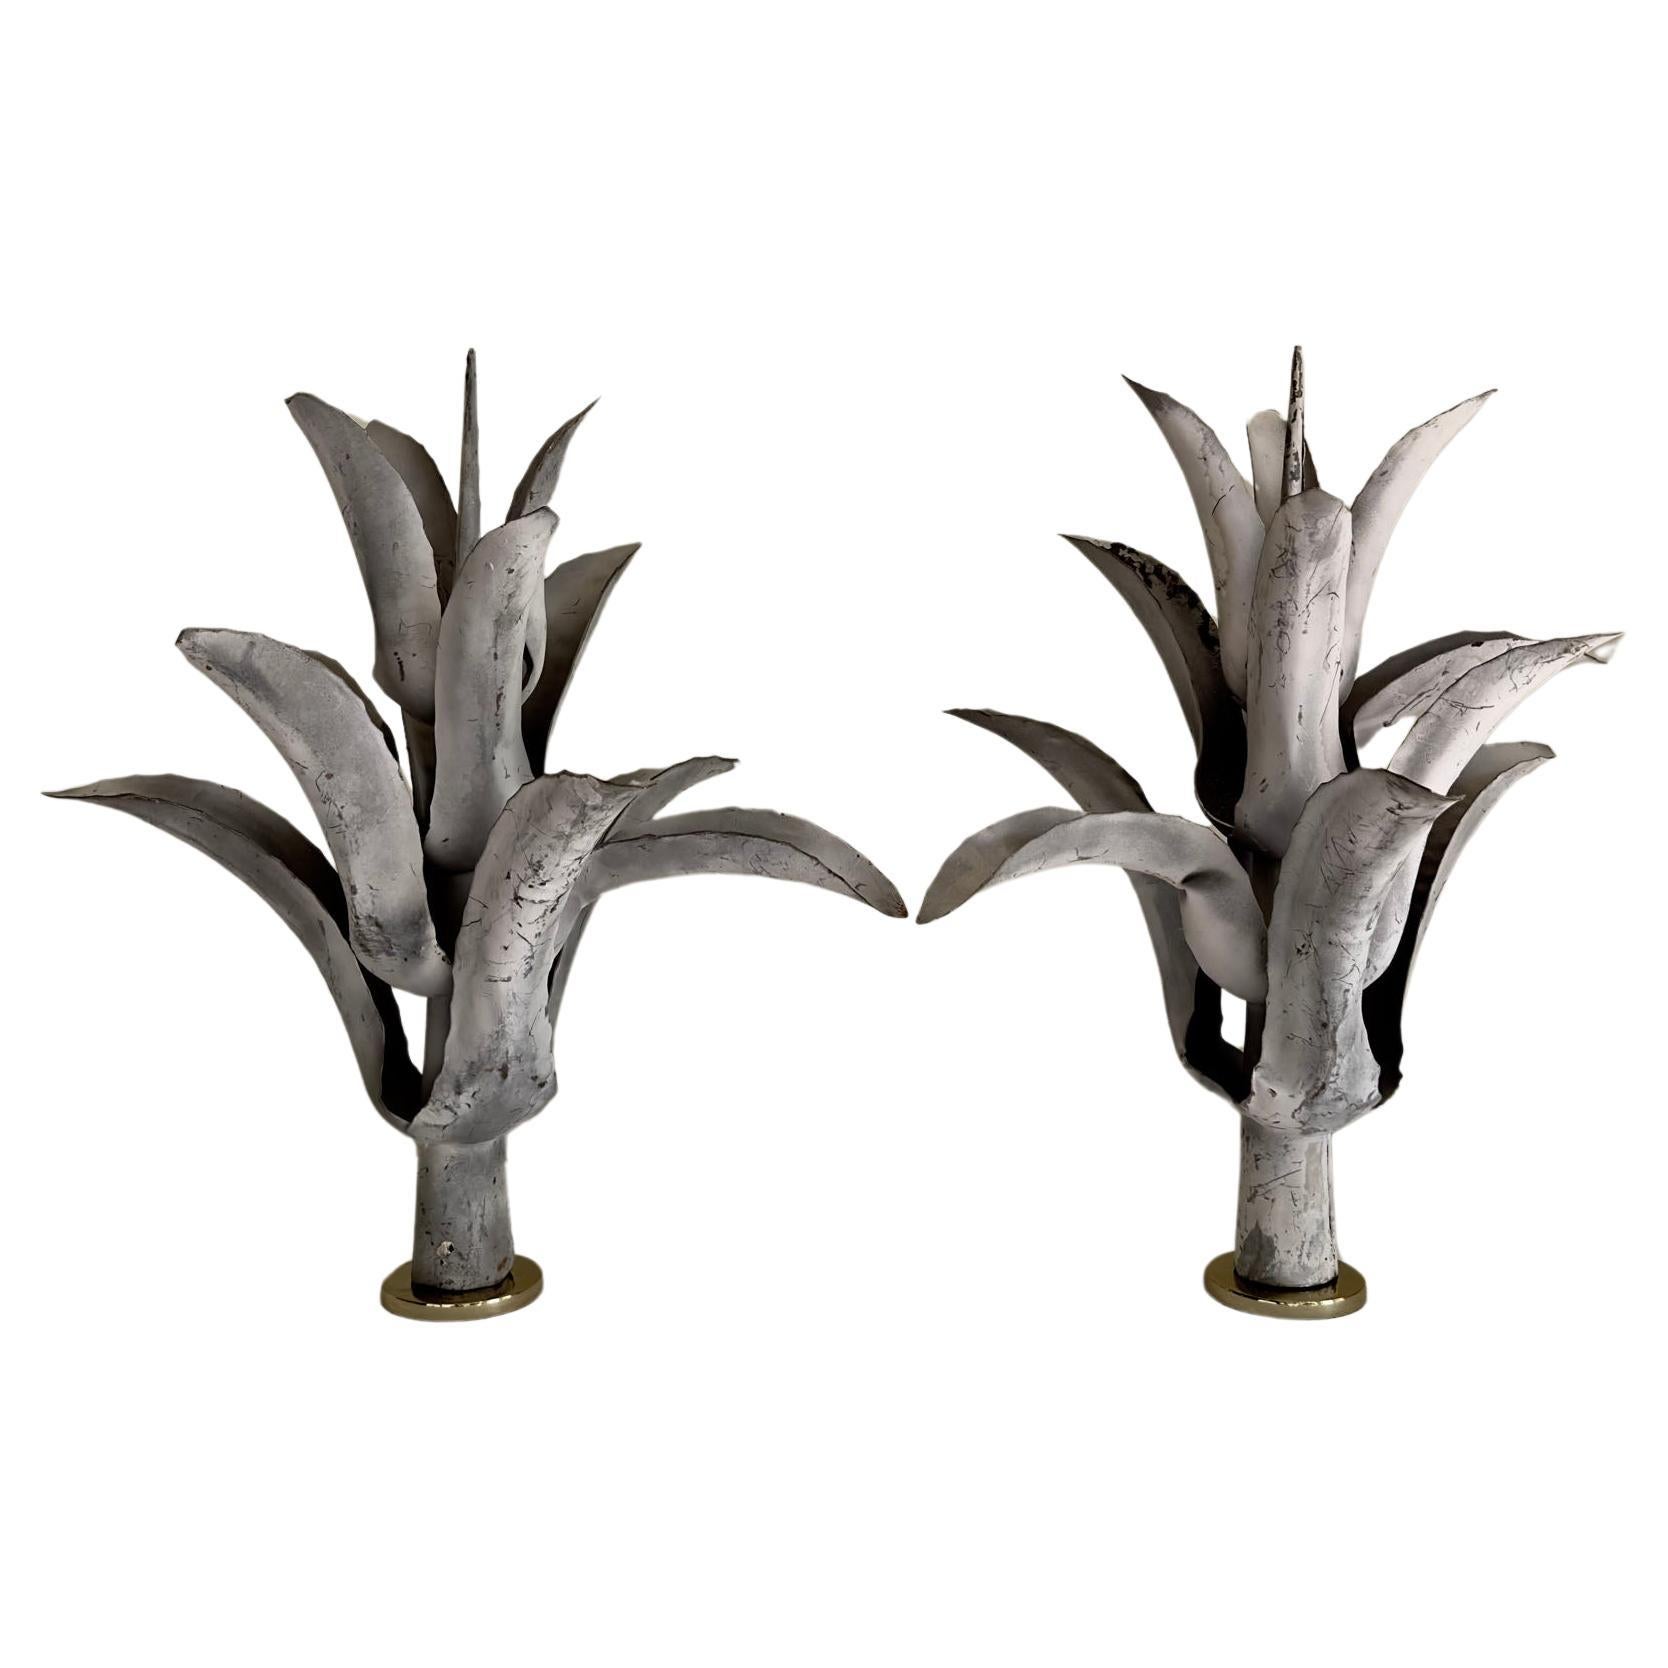 Pair French Zinc Agave Plant Specimen Sculptures